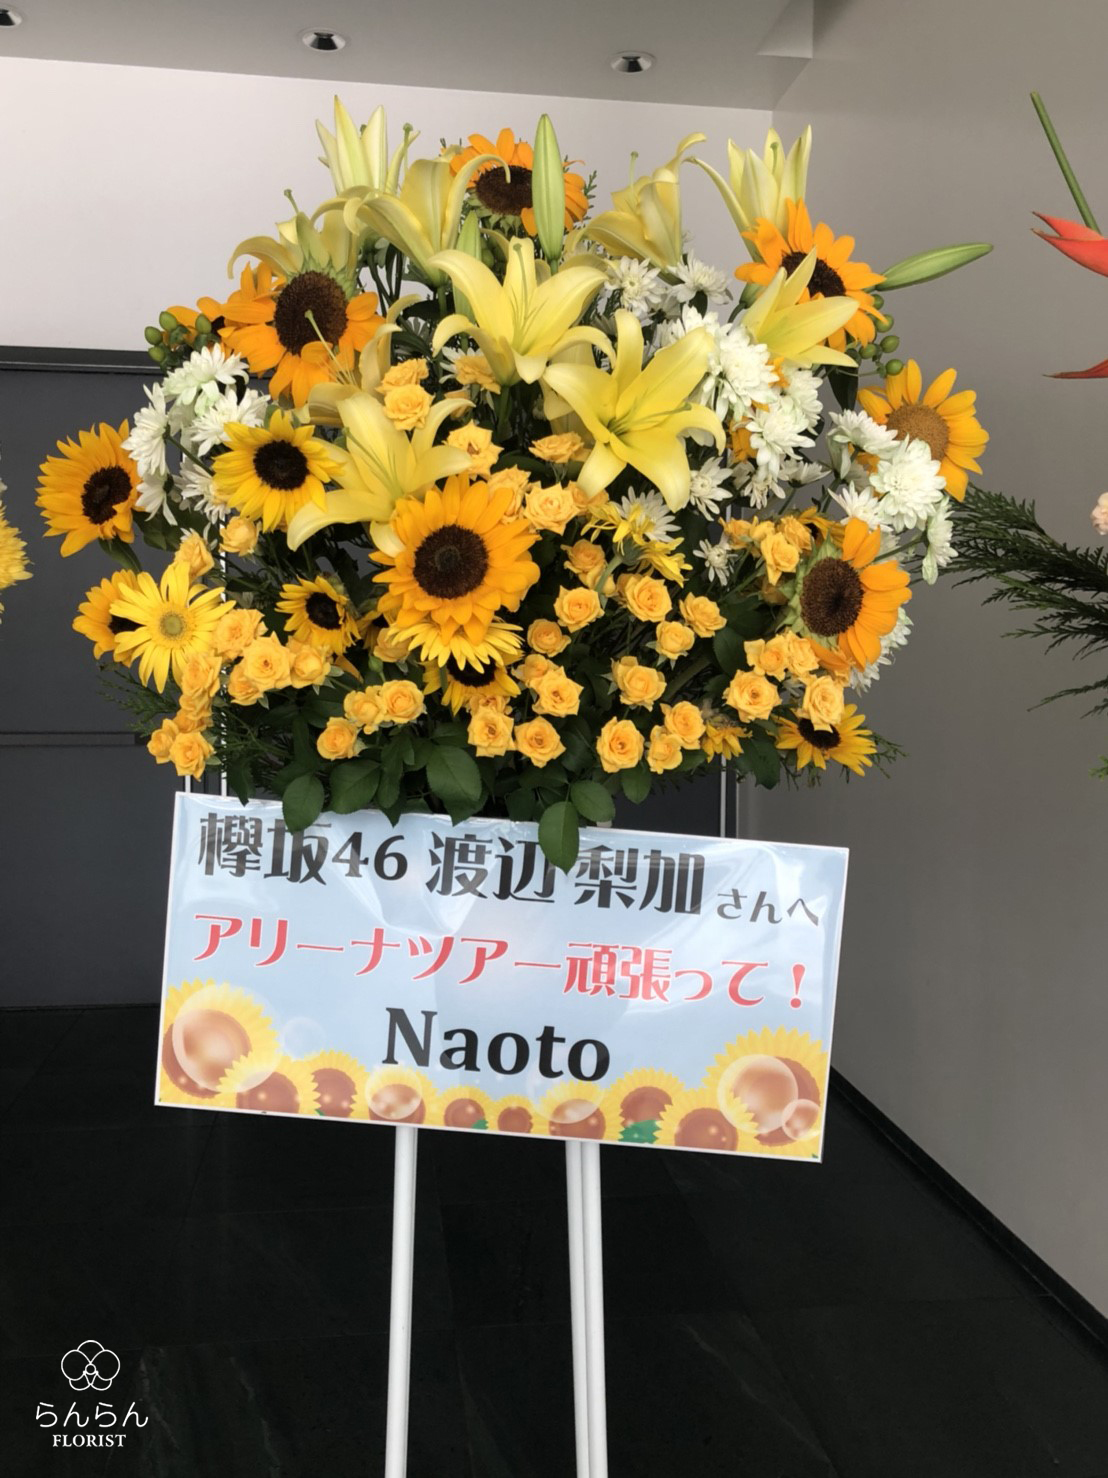 欅坂46 お祝いスタンド花